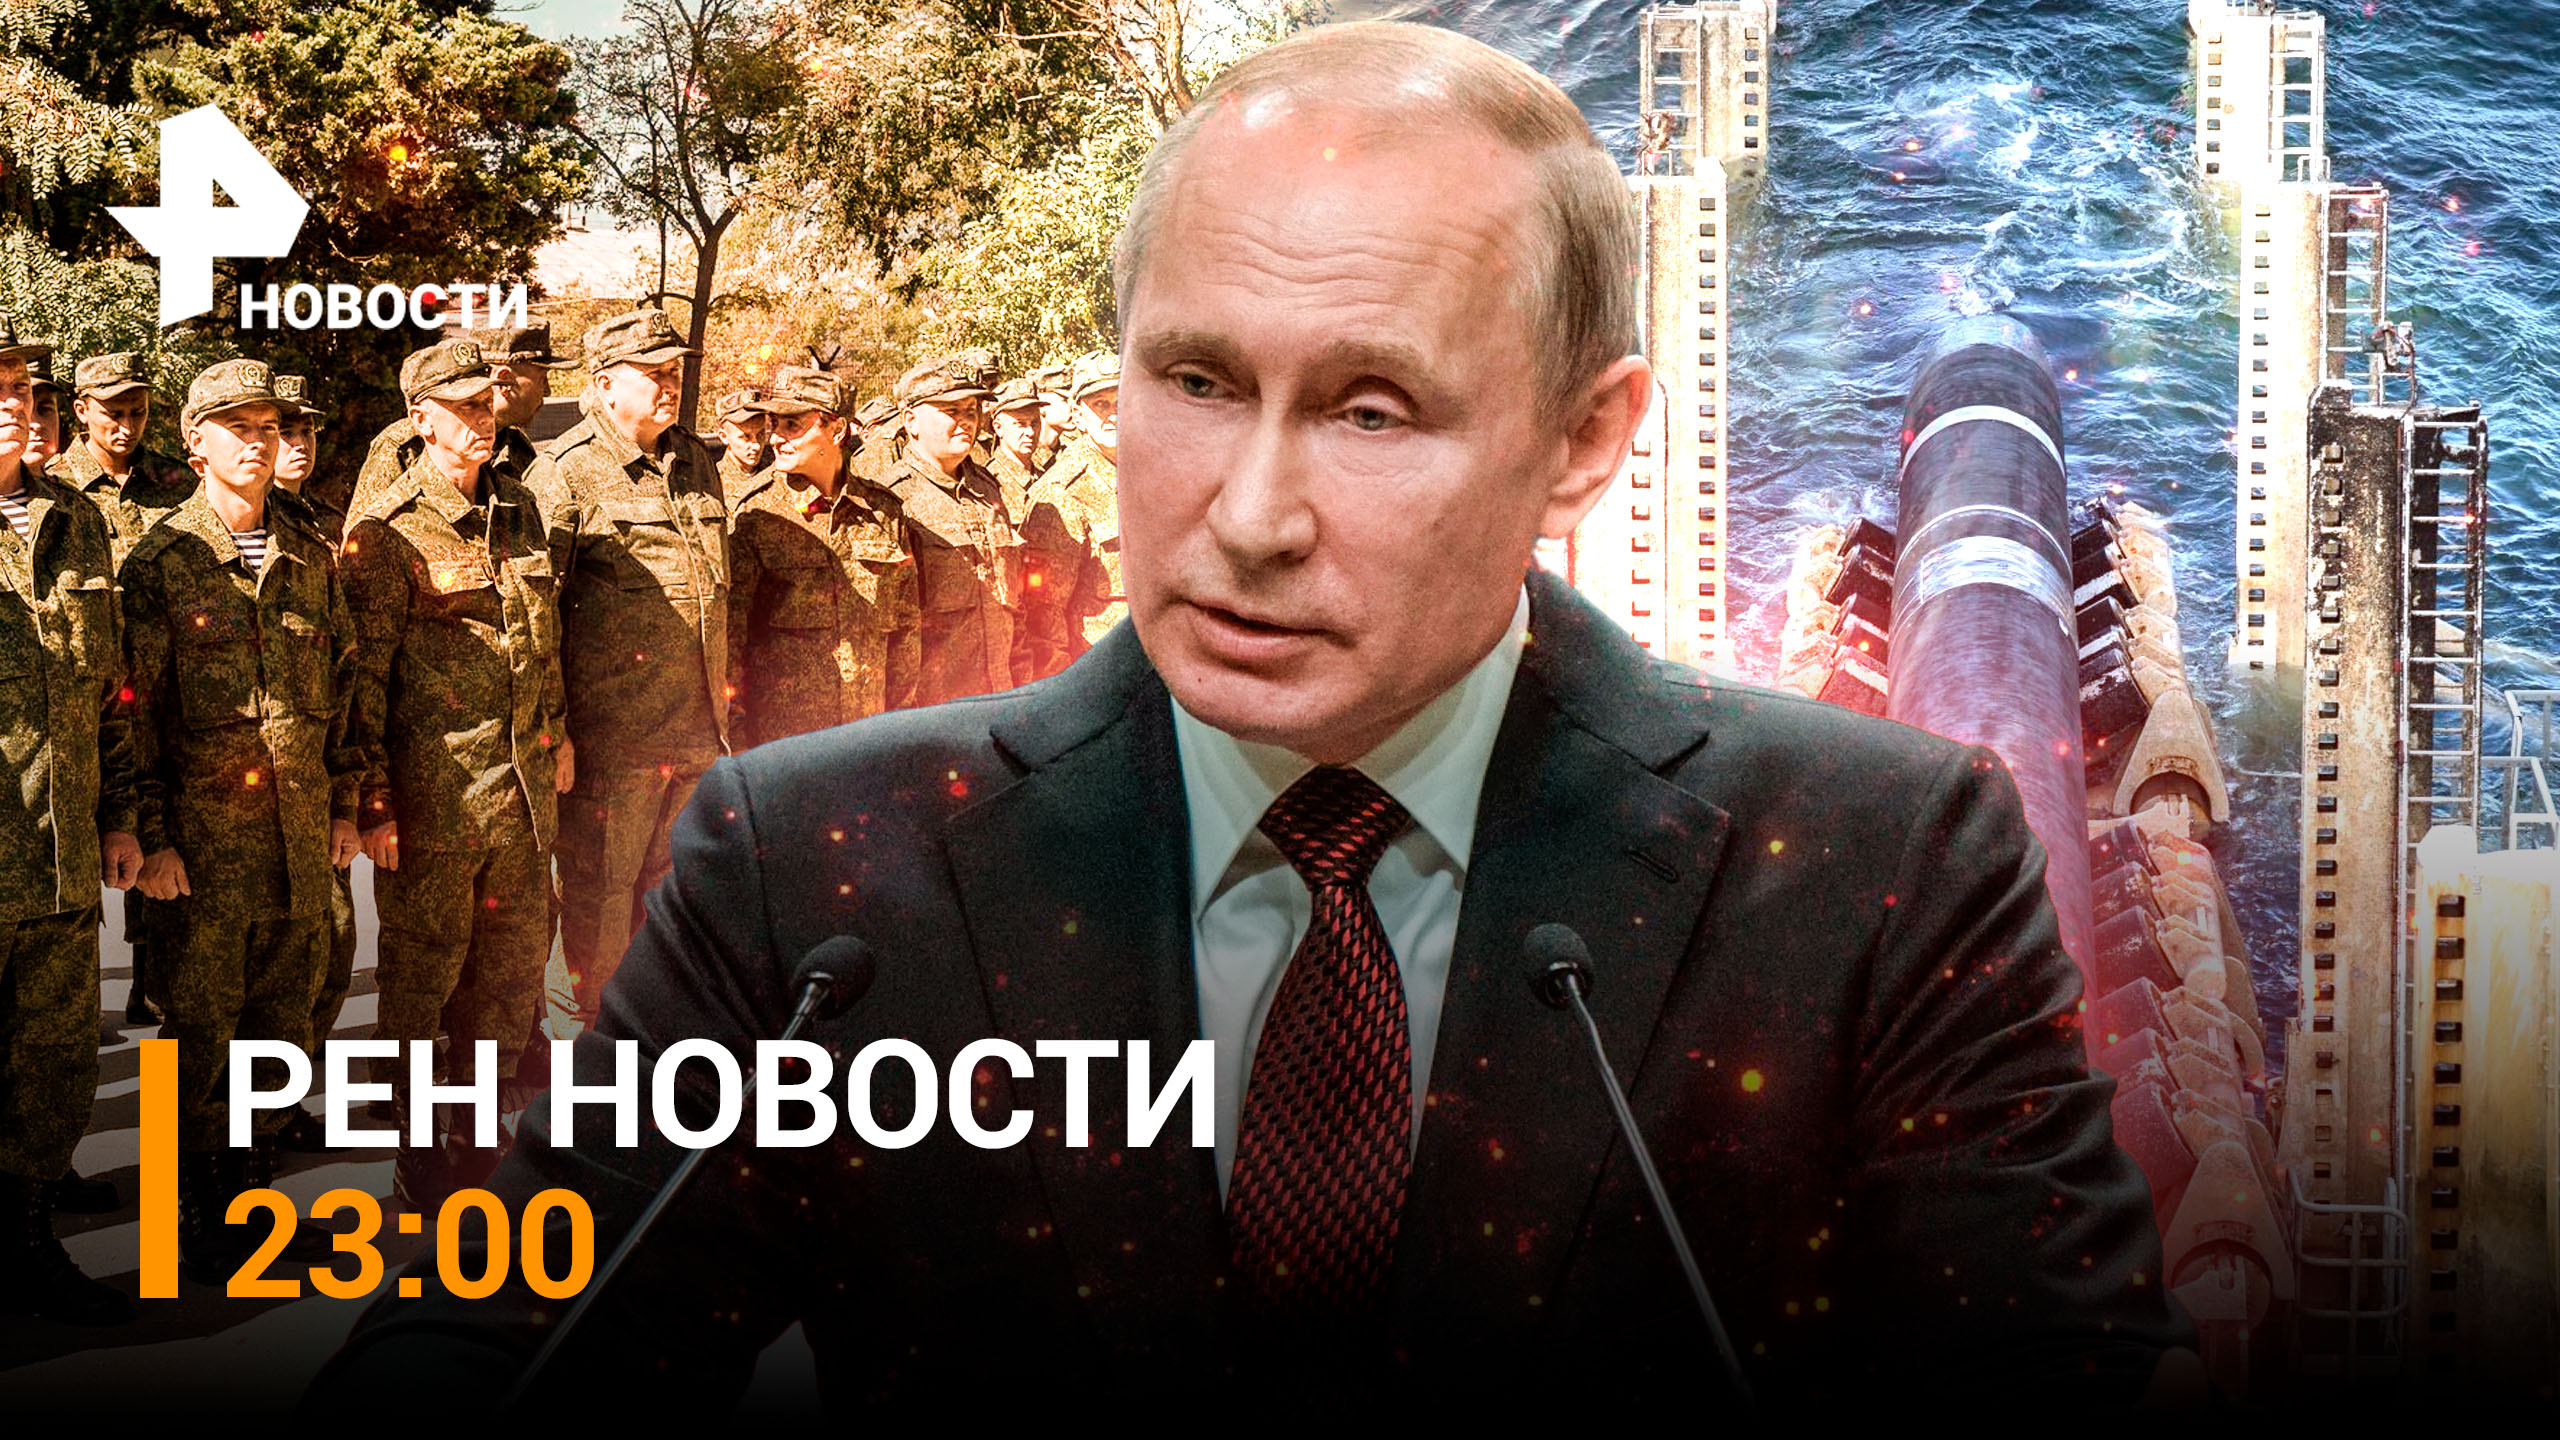 Путин потребовал вернуть незаконно мобилизованных. ВСУ обстреляли беженцев / РЕН НОВОСТИ 29.09,23:00